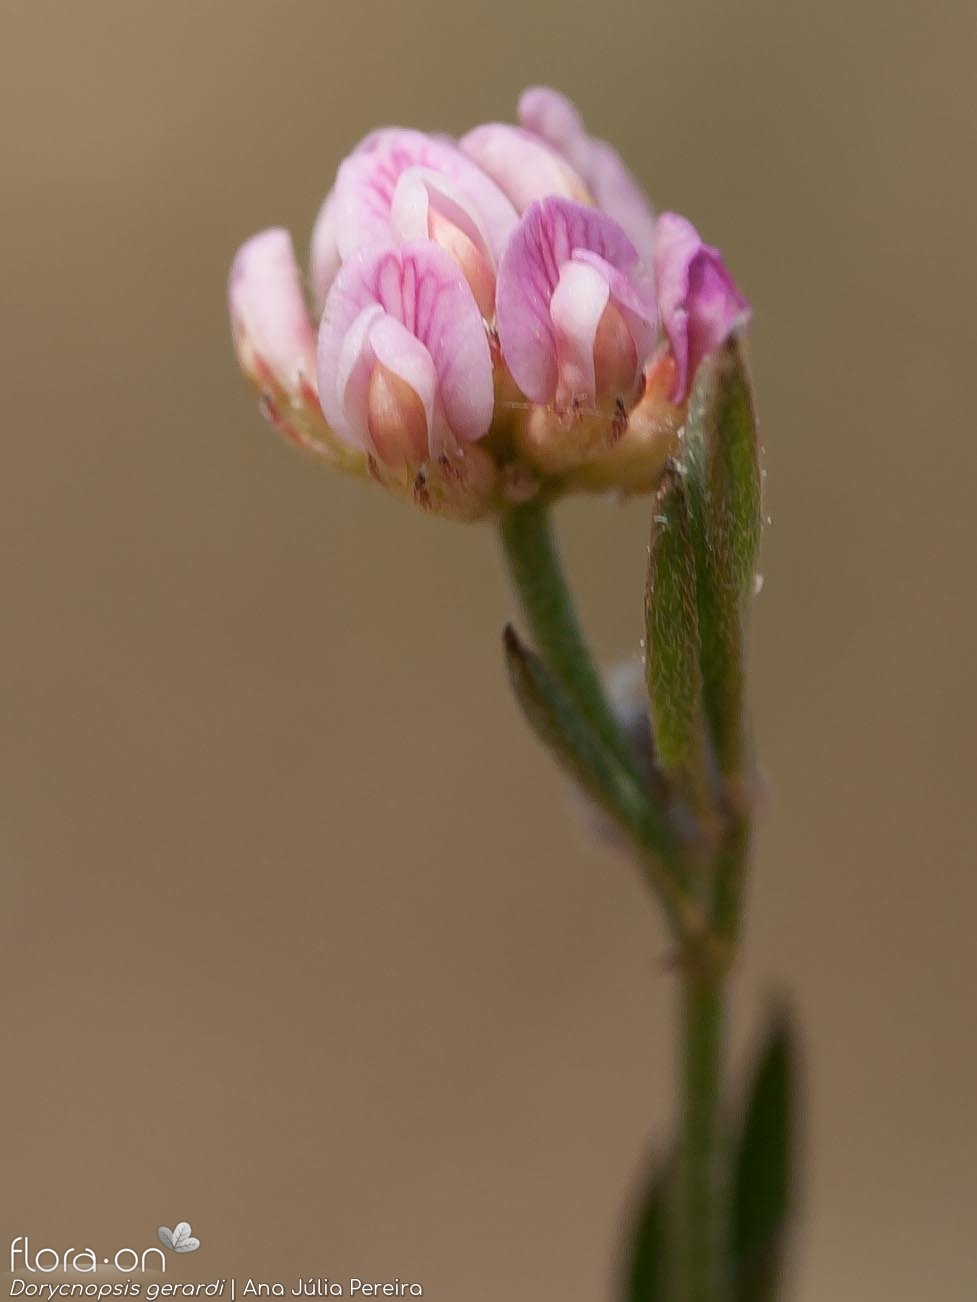 Dorycnopsis gerardi - Flor (close-up) | Ana Júlia Pereira; CC BY-NC 4.0